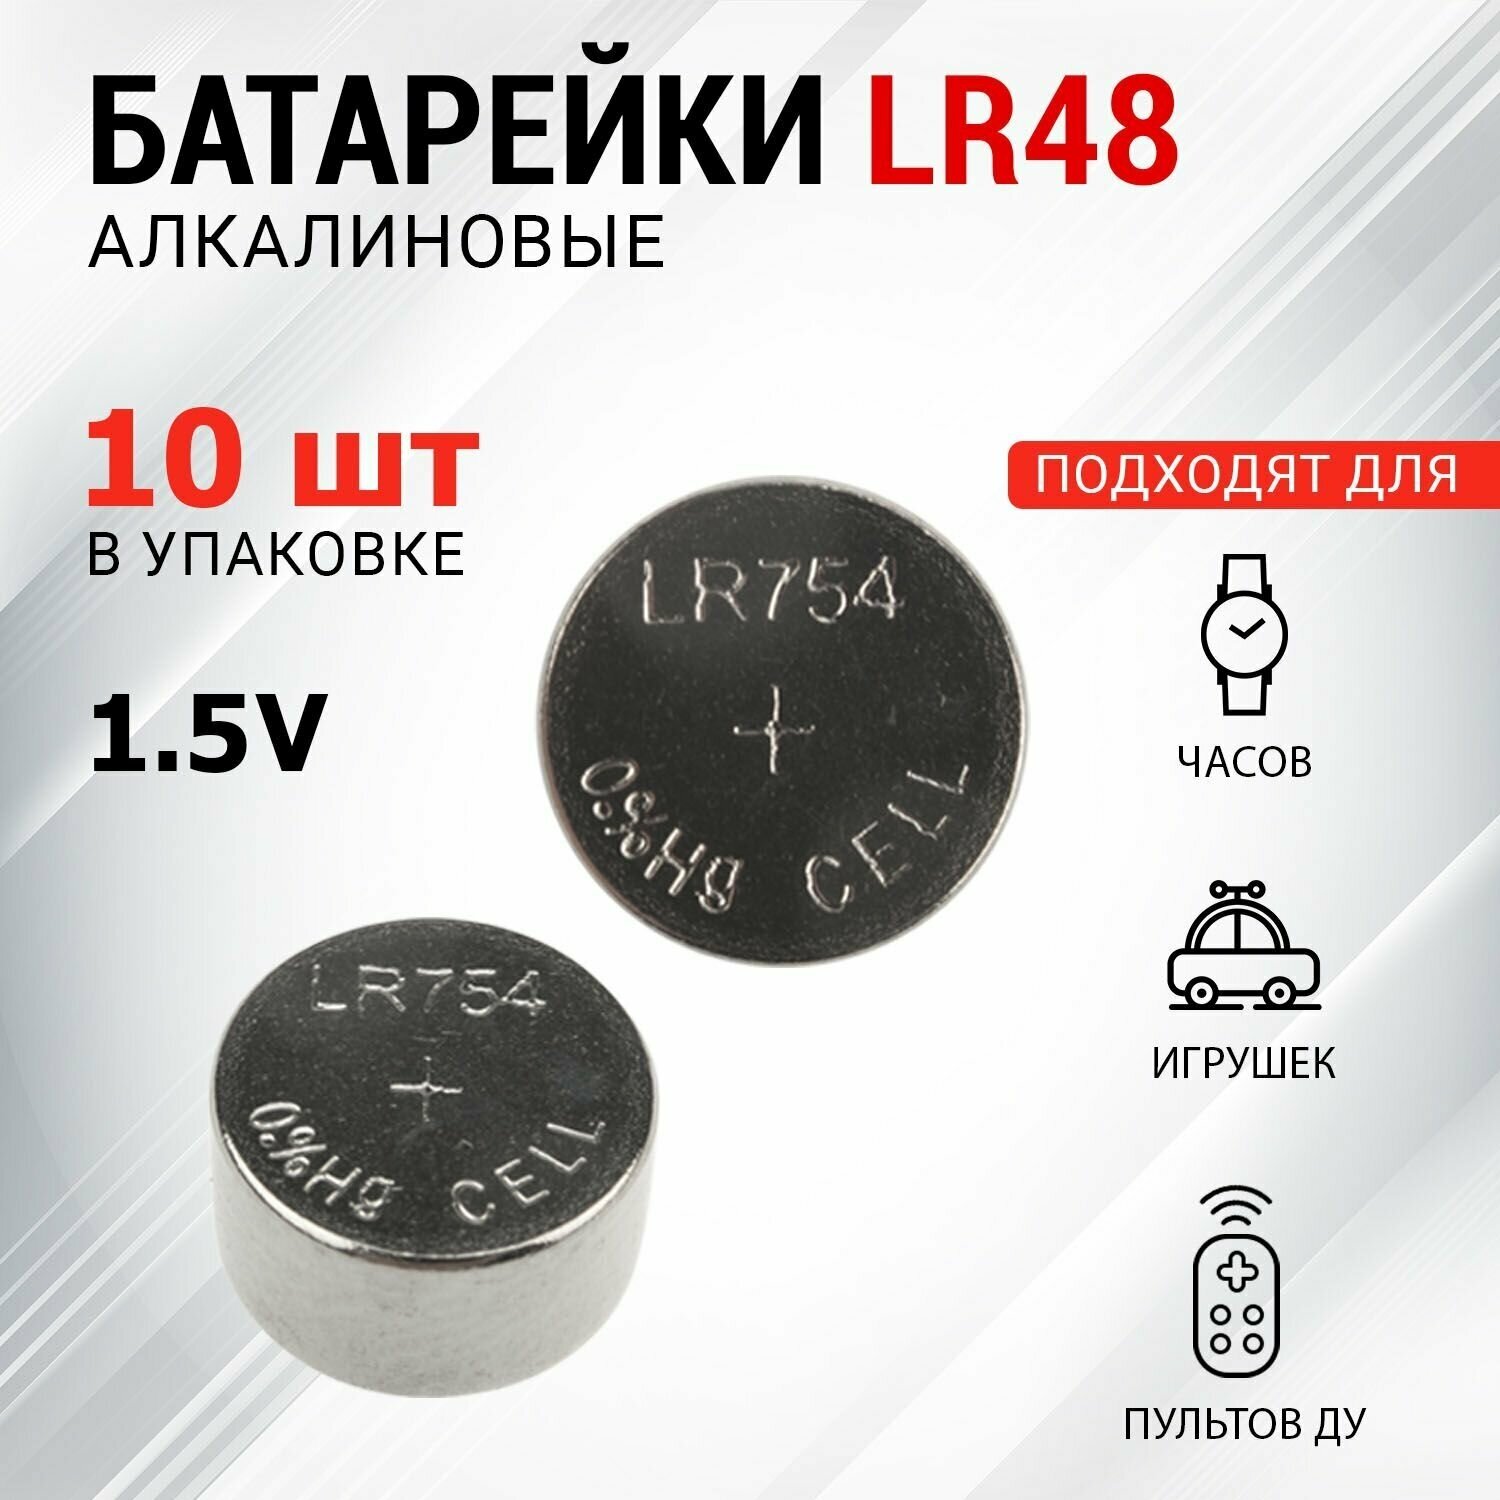 Батарейки REXANT типа LR48 (AG5 LR754 G5 193 GP93A 393 SR754W) 10 штук в упаковке